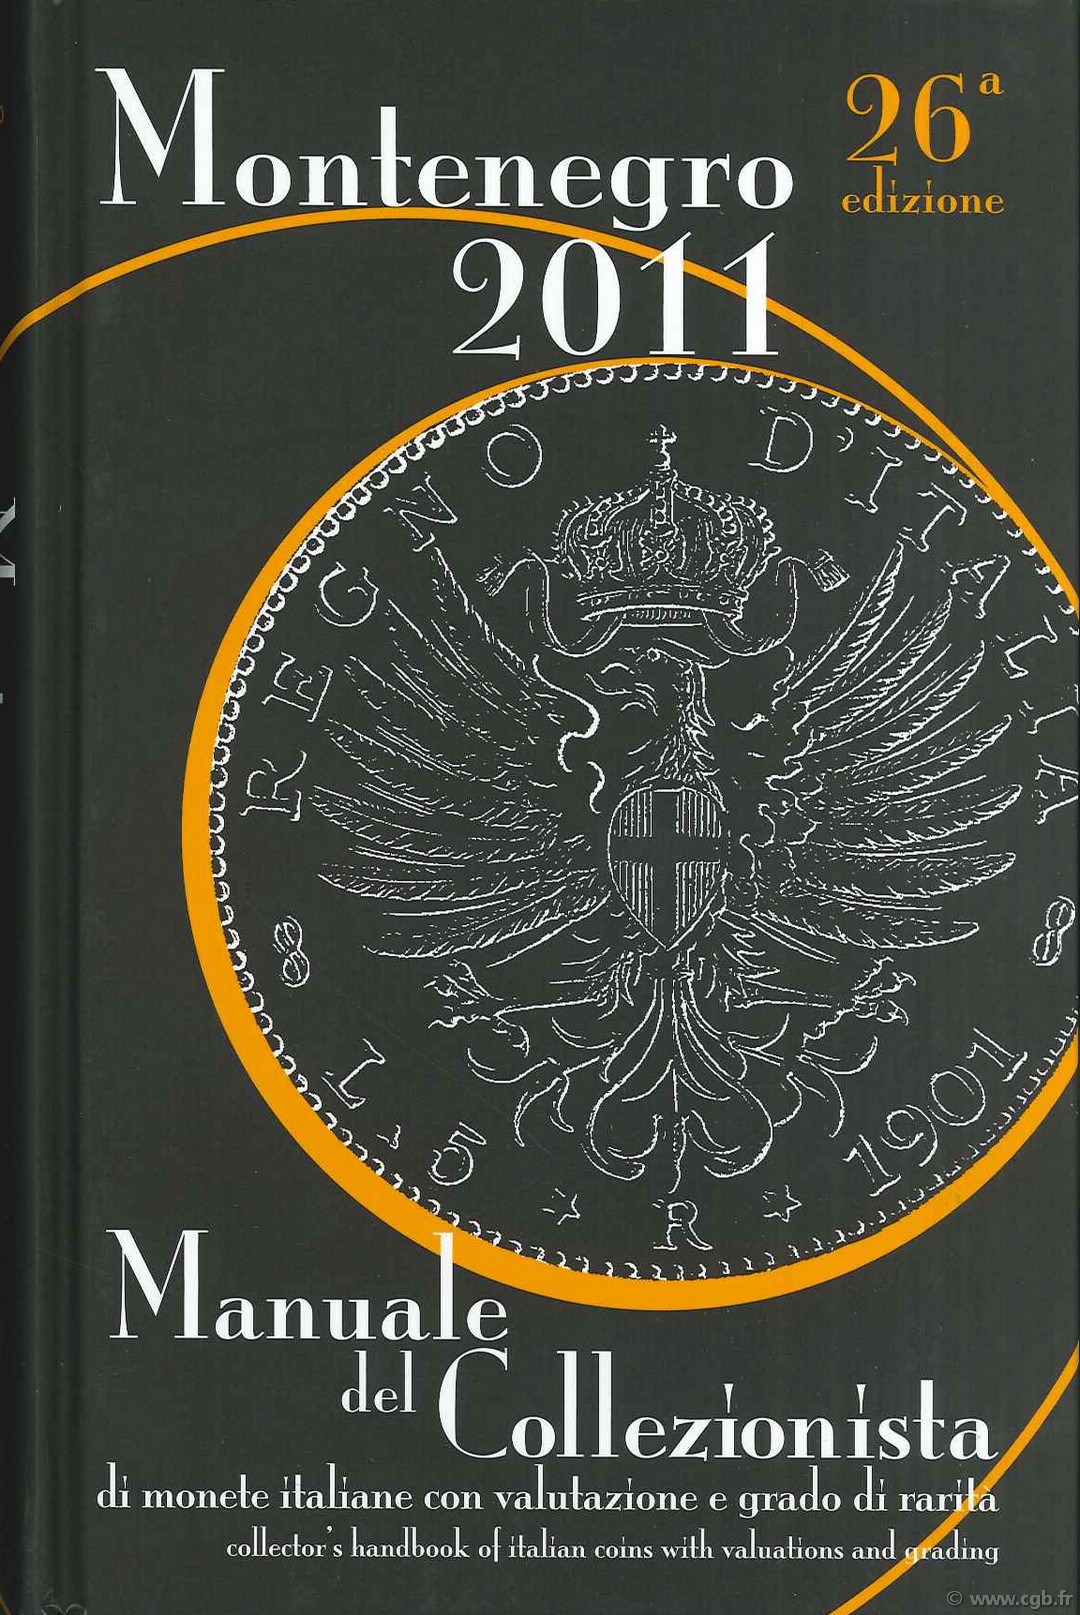 Montenegro 2011, Manuale del collezionista di monete italiane con valutazione e gradi di rarità - 26a edizione MONTENEGRO Eupremio